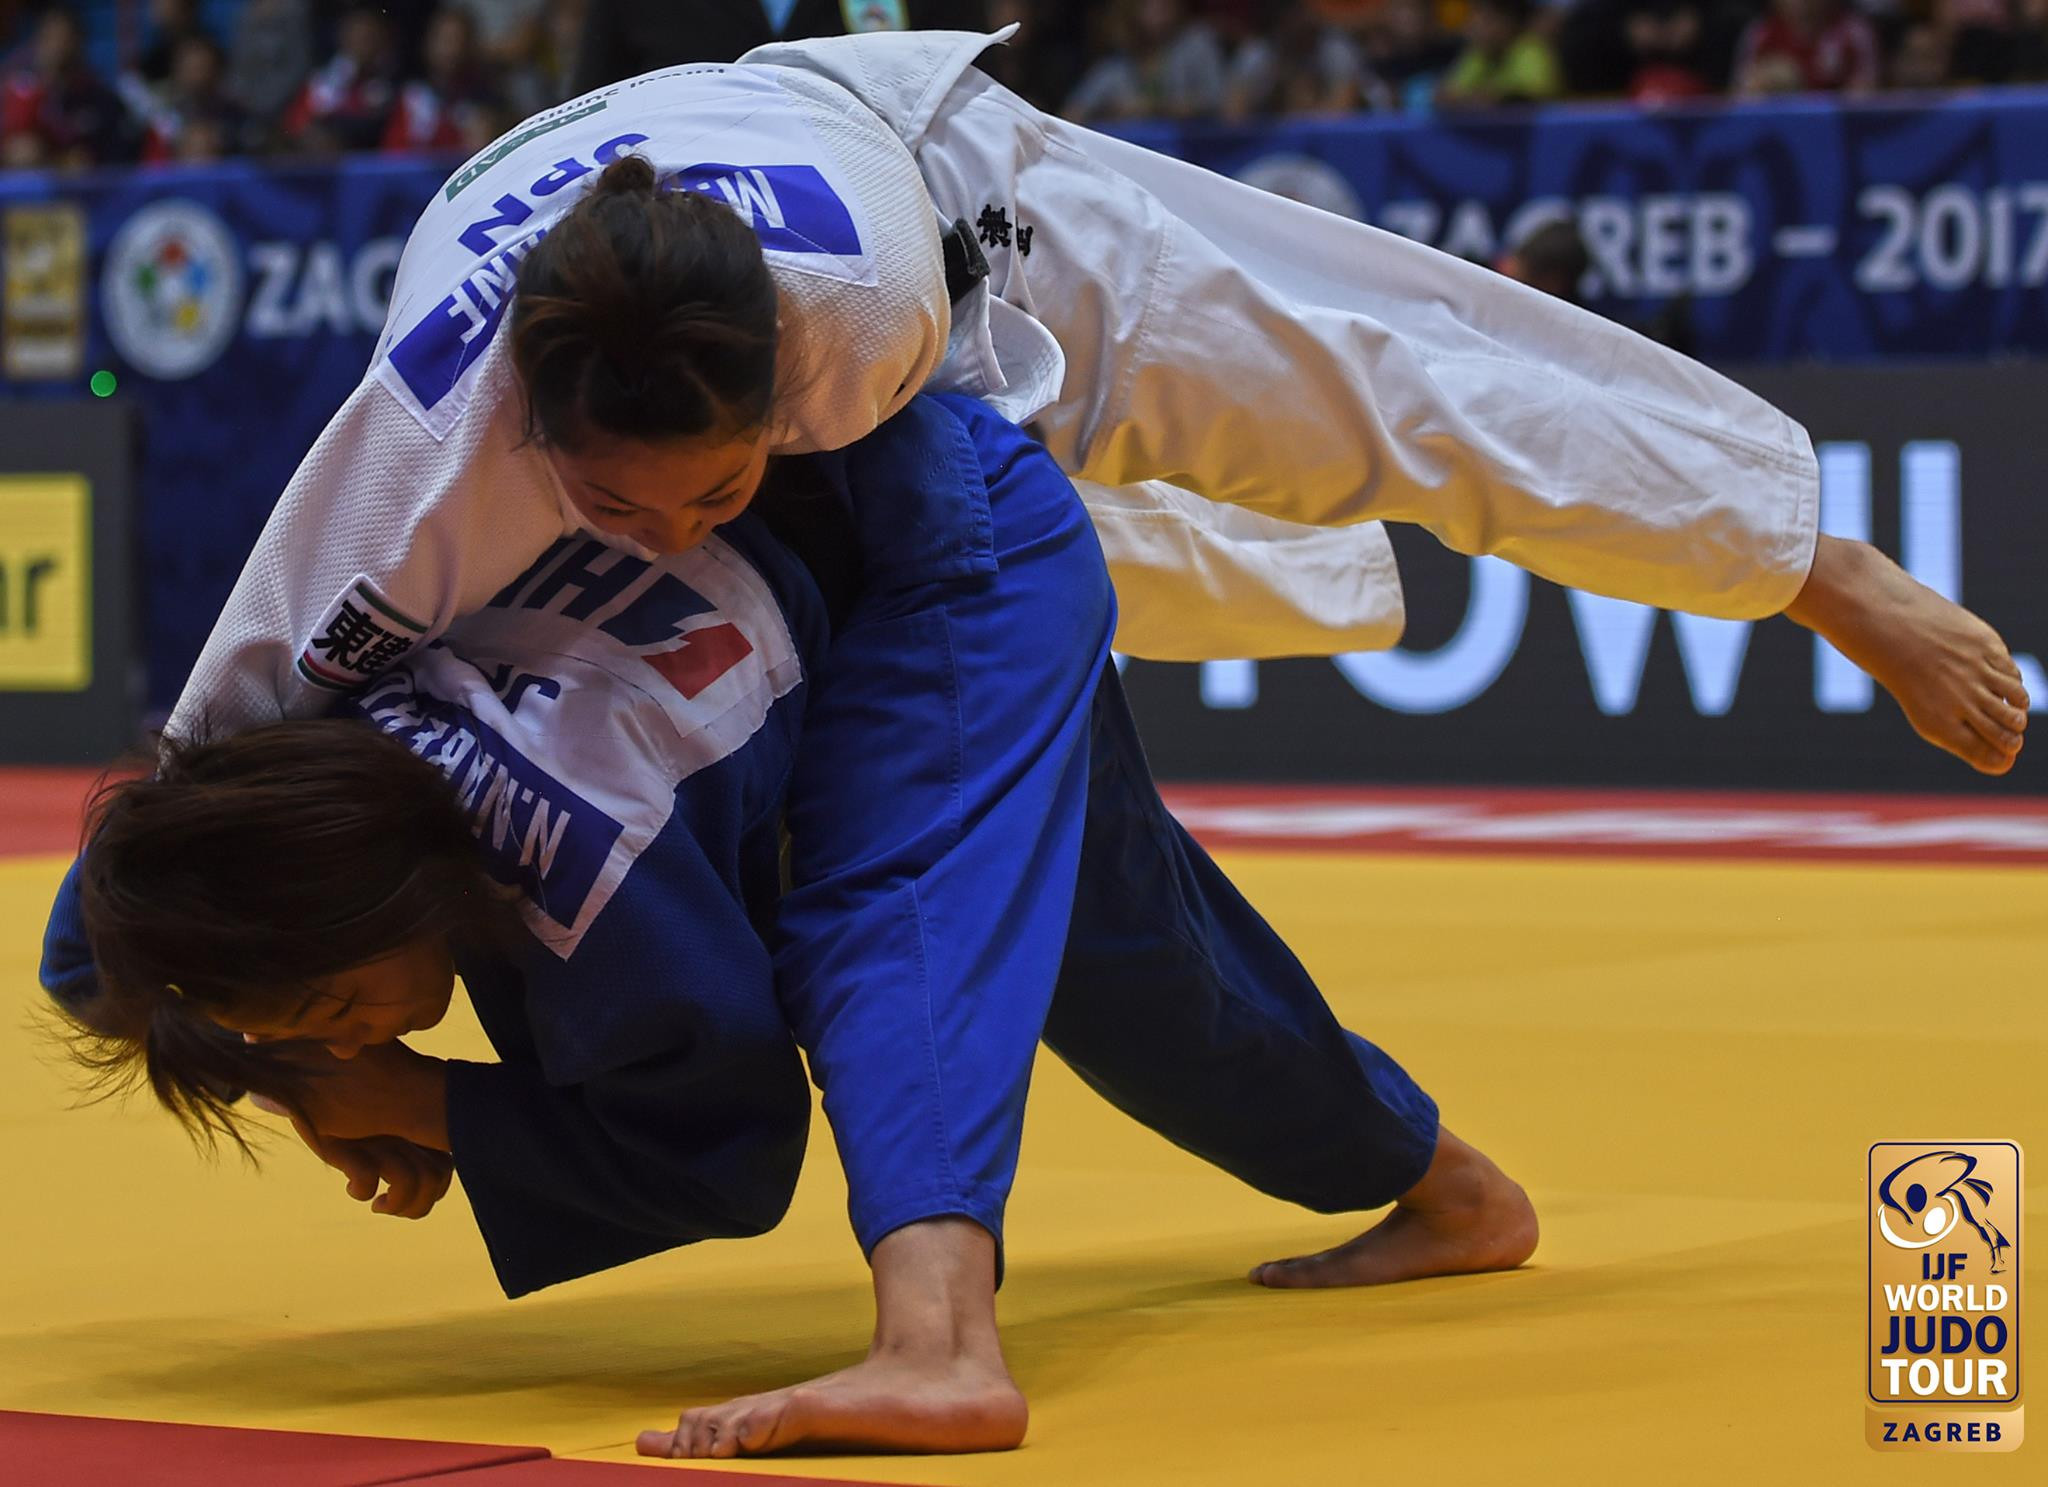 Nabekura beats team-mate to gold at IJF Grand Prix in Zagreb